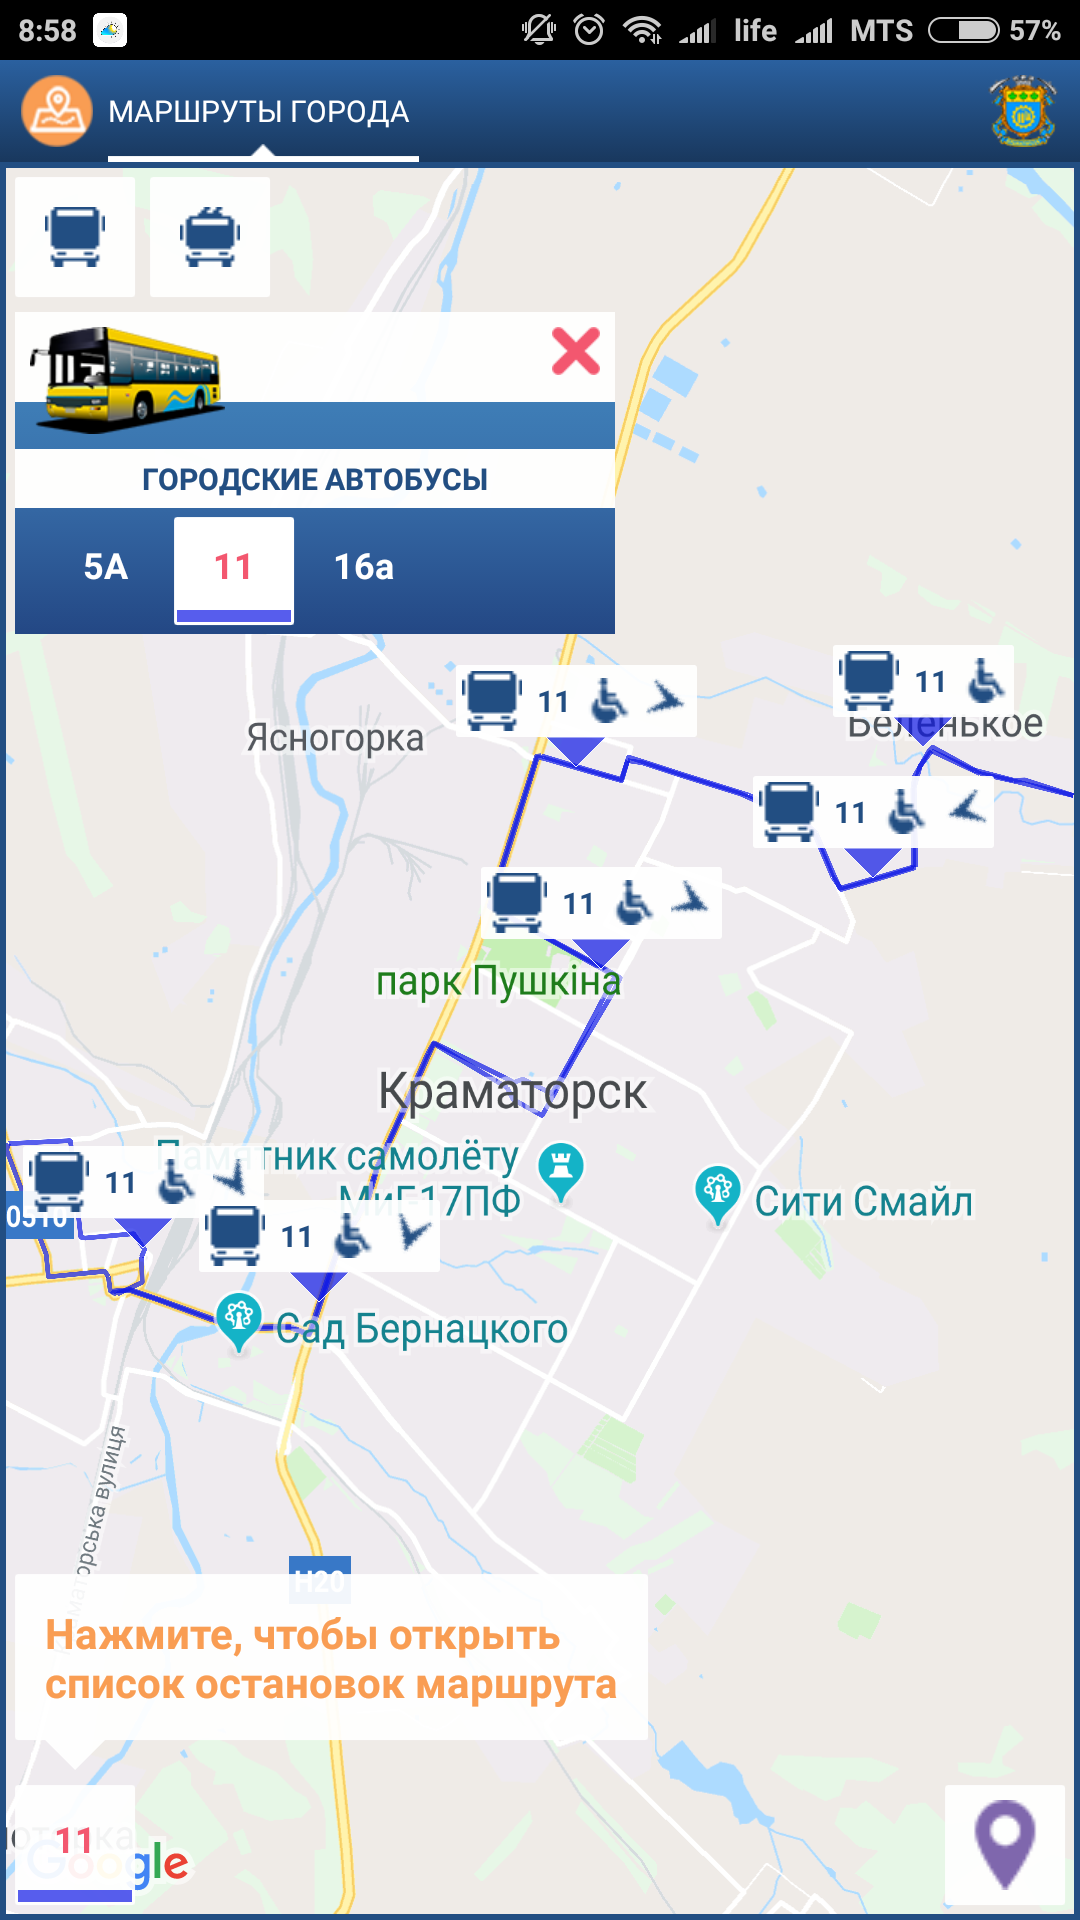 http://vp.donetsk.ua/images/2018/12/kramatorsk_transport_online_2.png